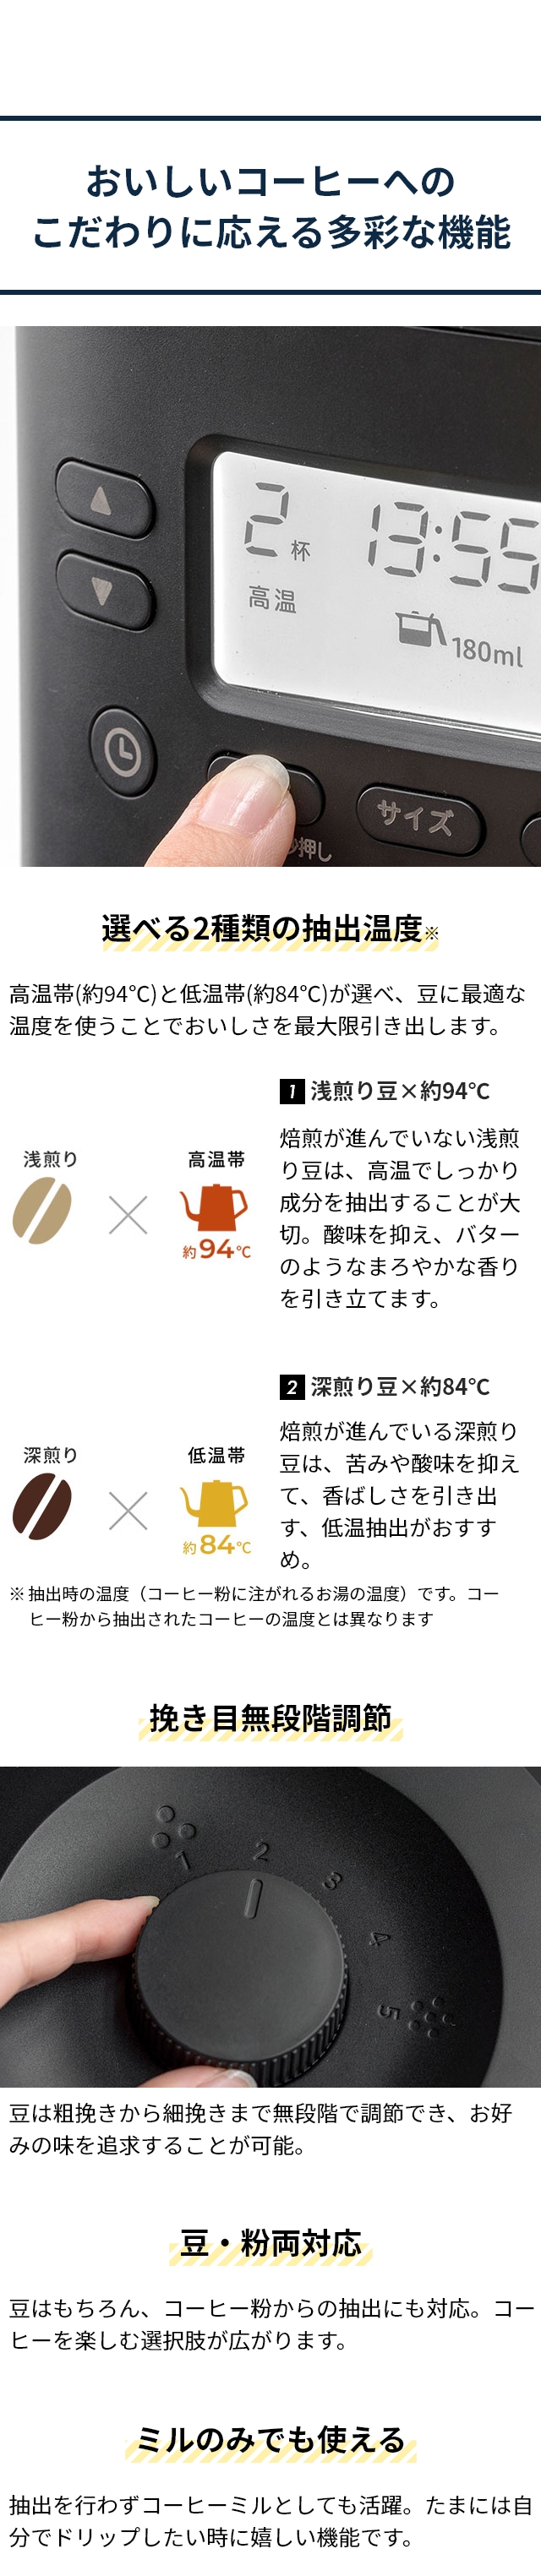 siroca(シロカ) コーン式全自動コーヒーメーカー カフェばこPRO CM-6C261